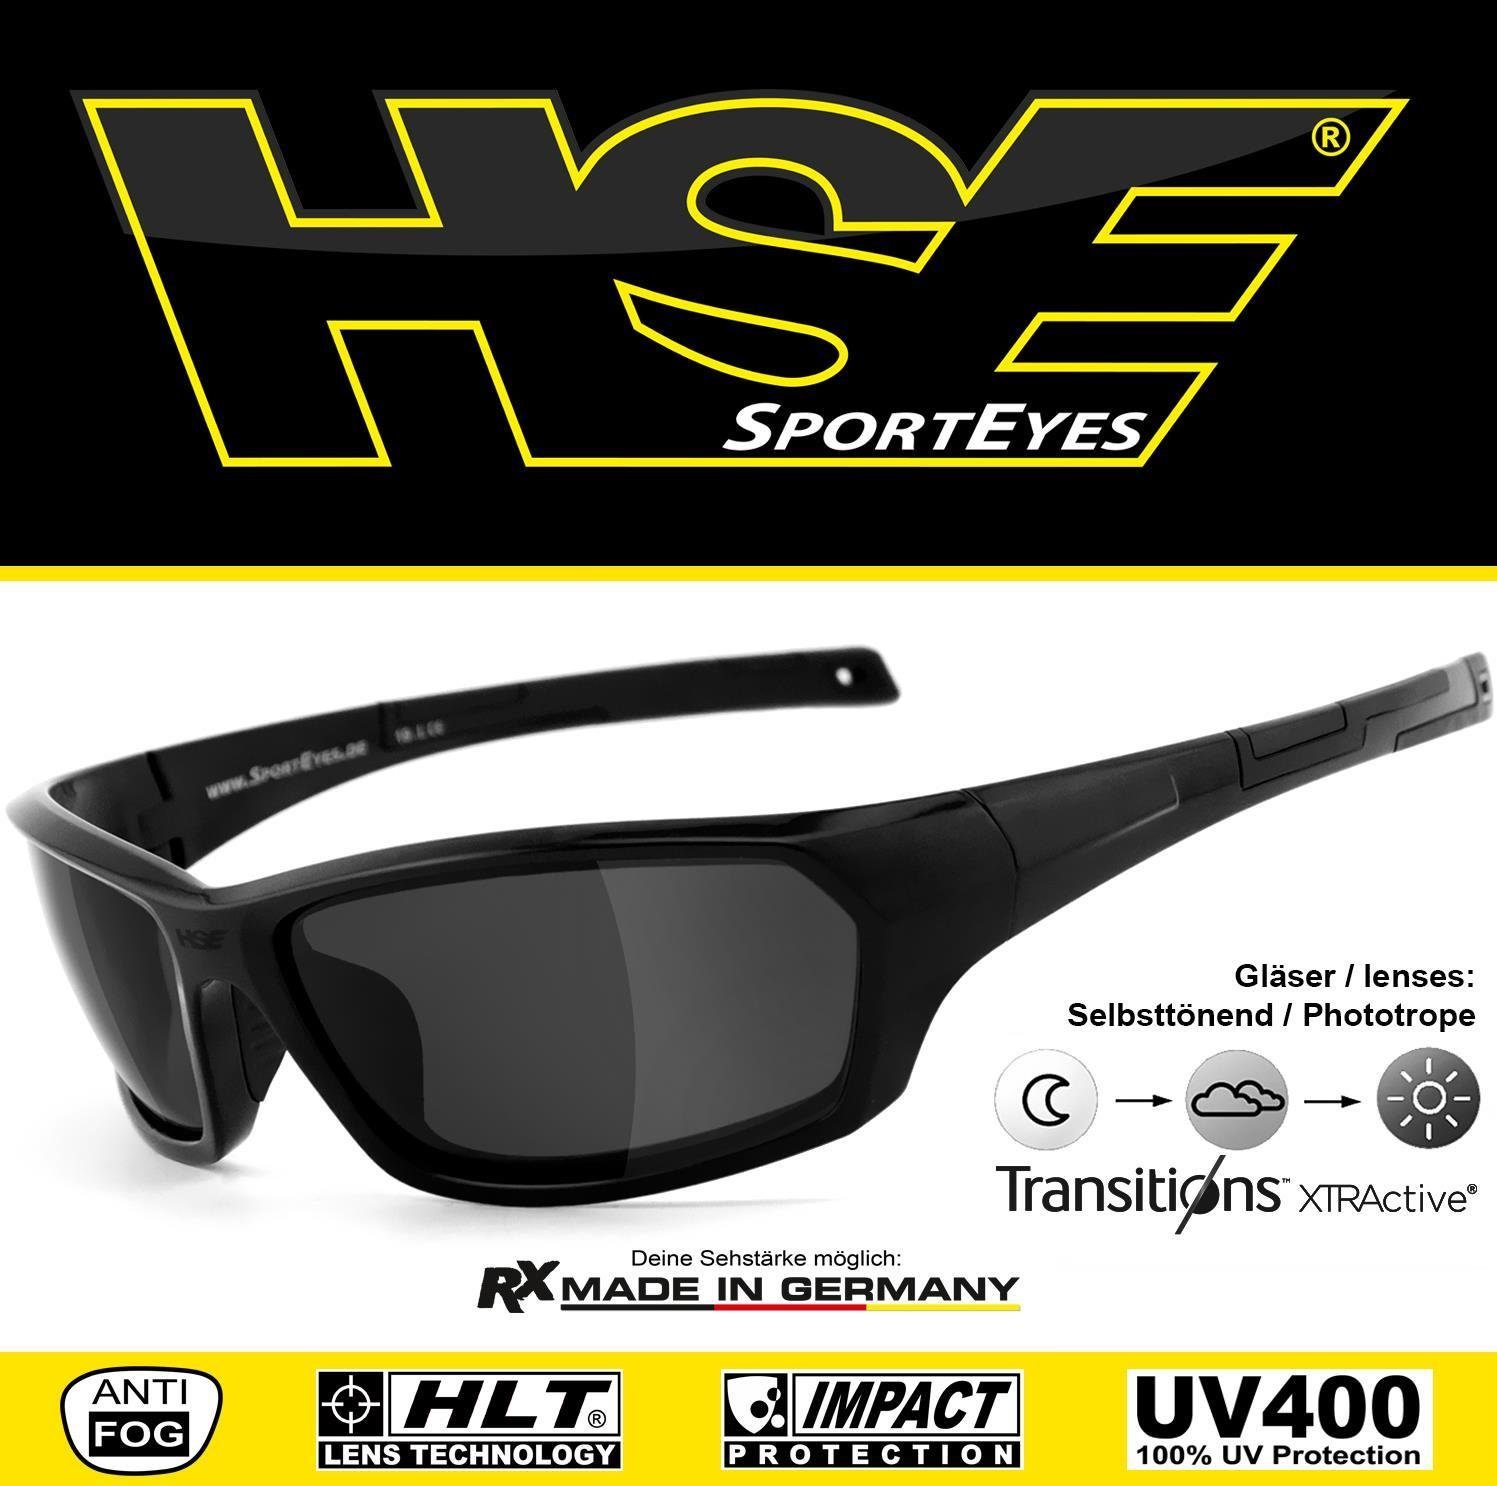 HSE - Gläser - selbsttönend, AIR-STREAM Sportbrille SportEyes Selbsttönende